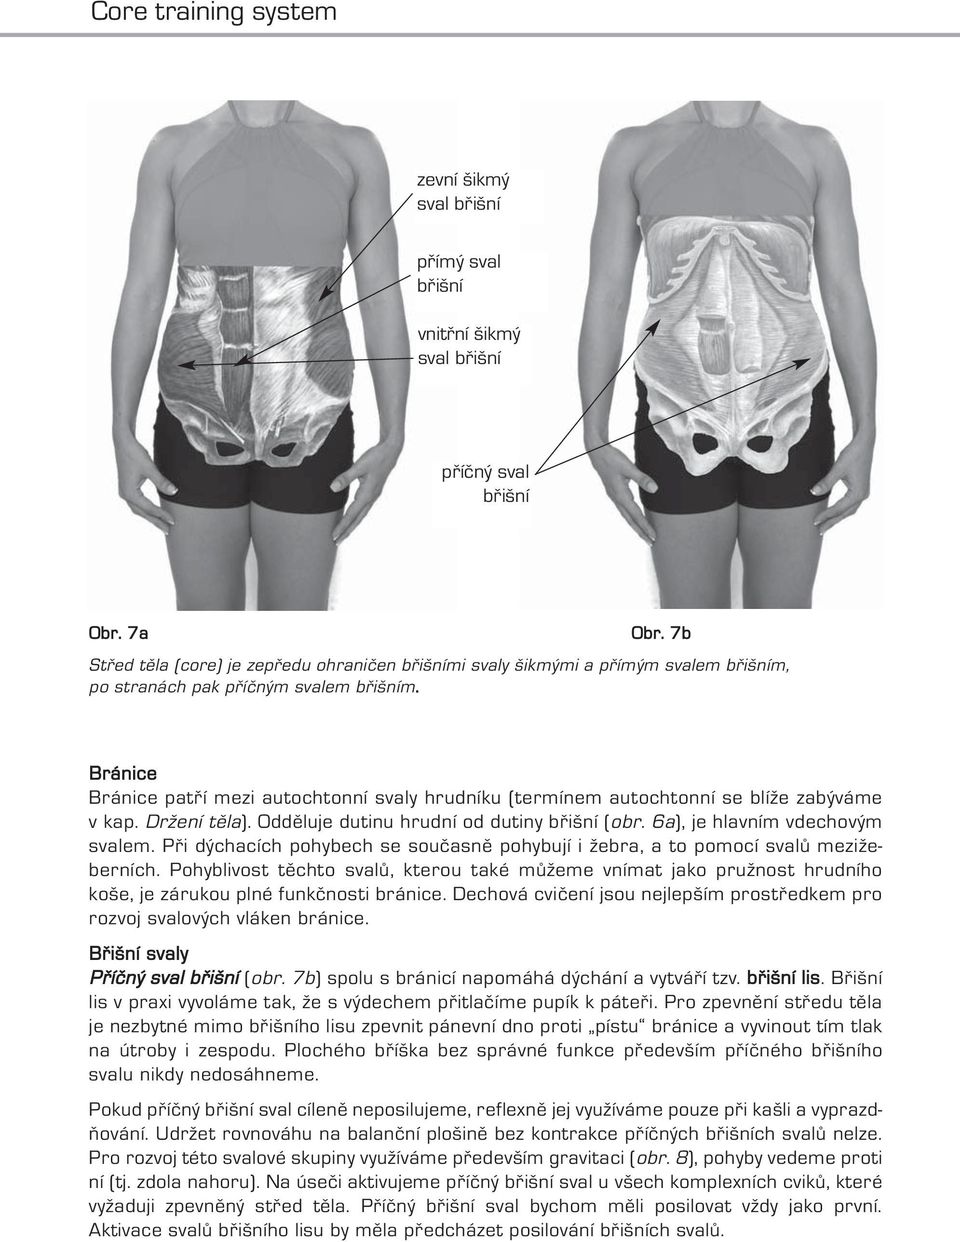 Bránice Bránice patří mezi autochtonní svaly hrudníku (termínem autochtonní se blíže zabýváme v kap. Držení těla). Odděluje dutinu hrudní od dutiny břišní (obr. 6a), je hlavním vdechovým svalem.